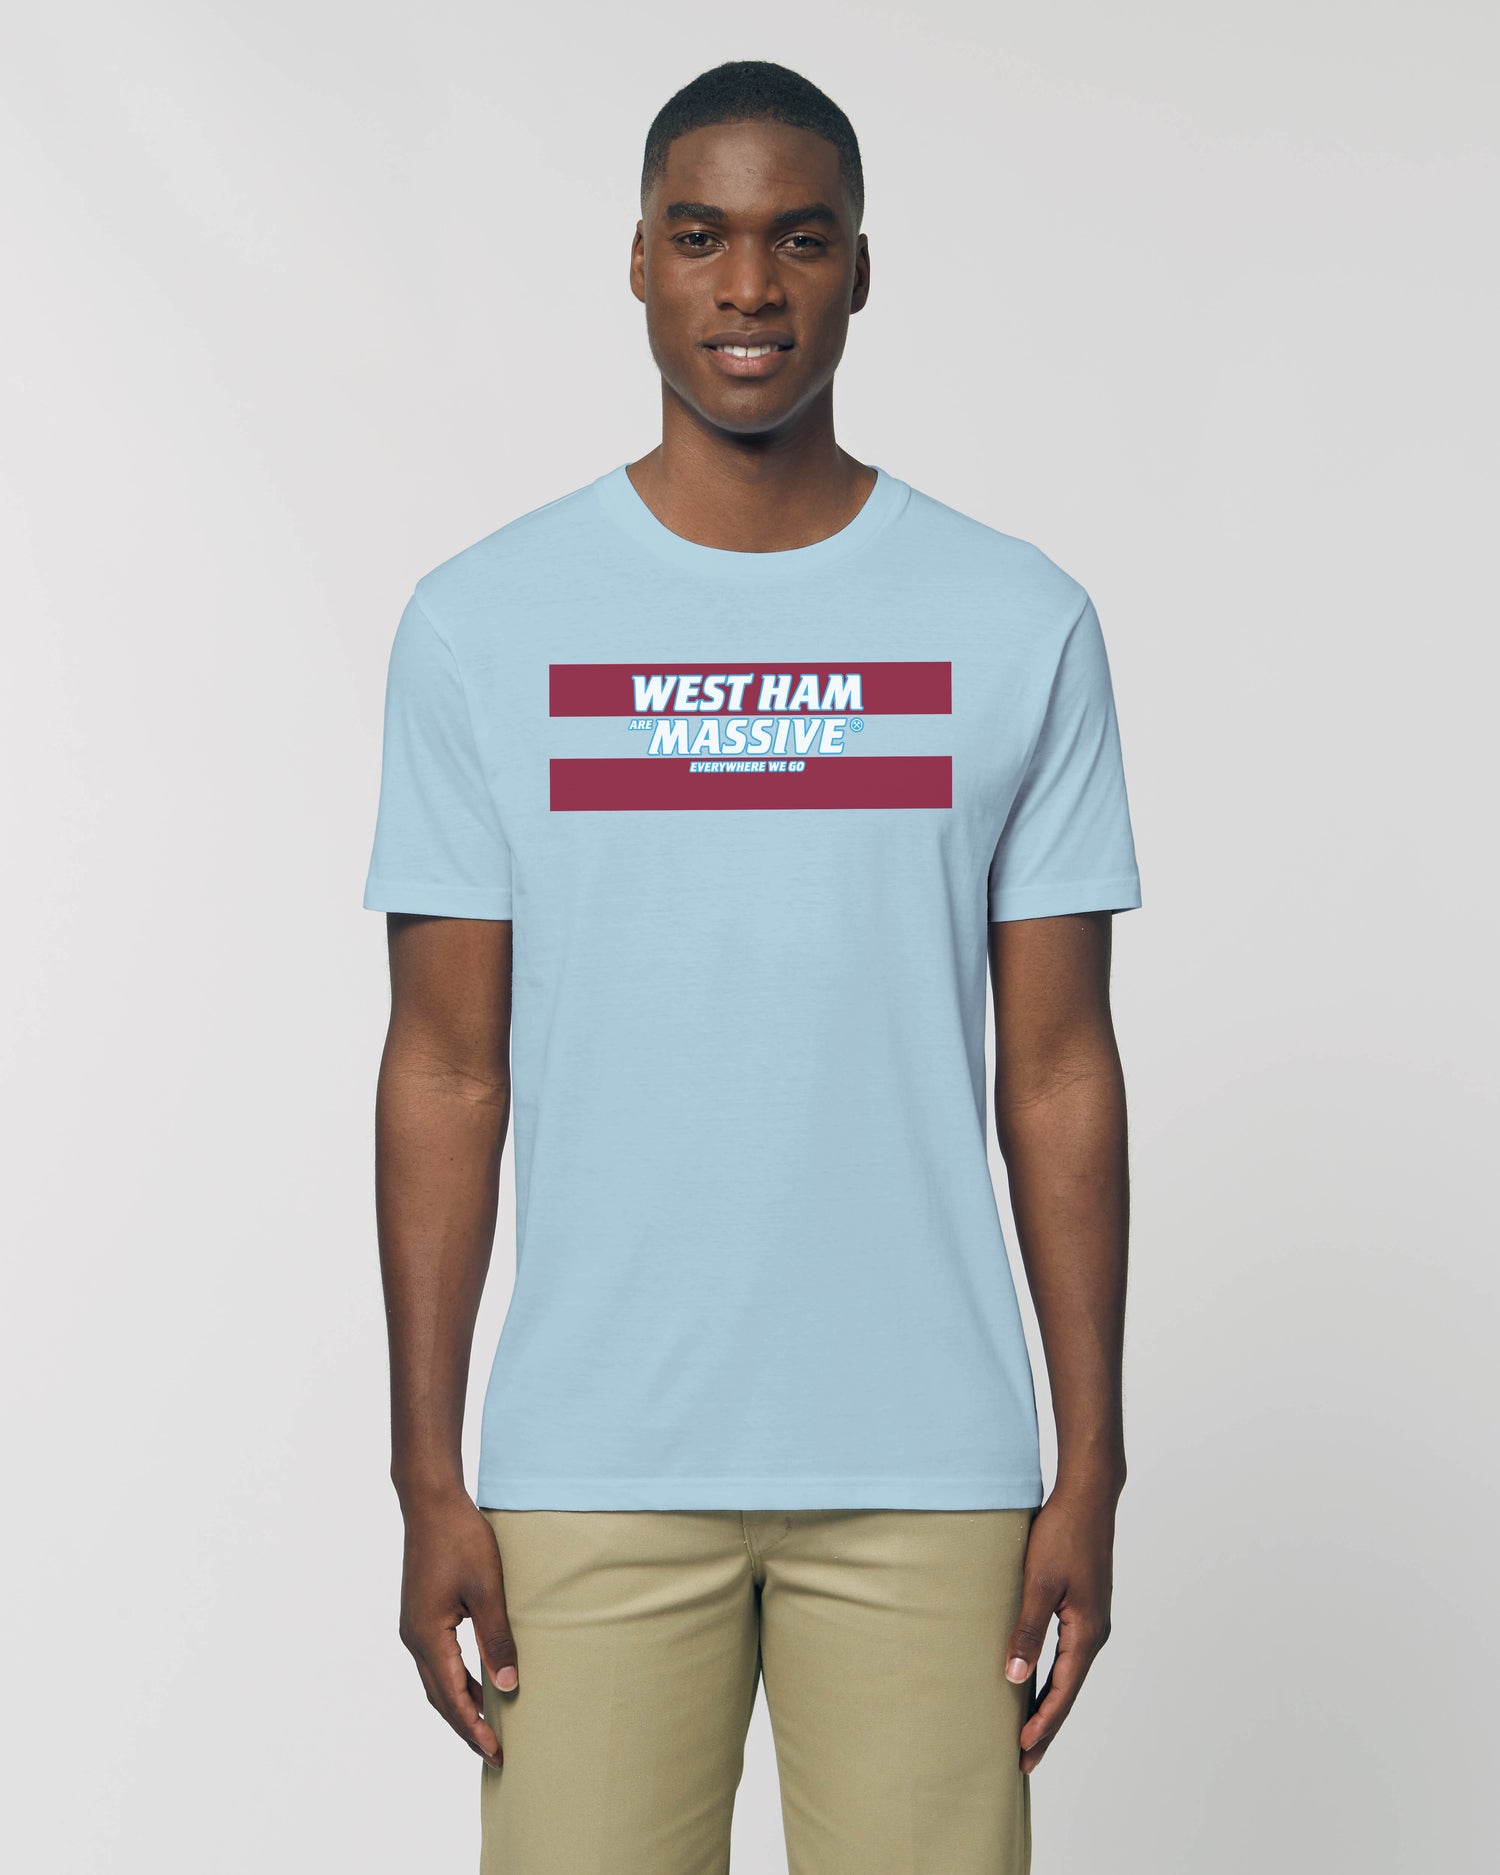 Men's / Unisex T-Shirt